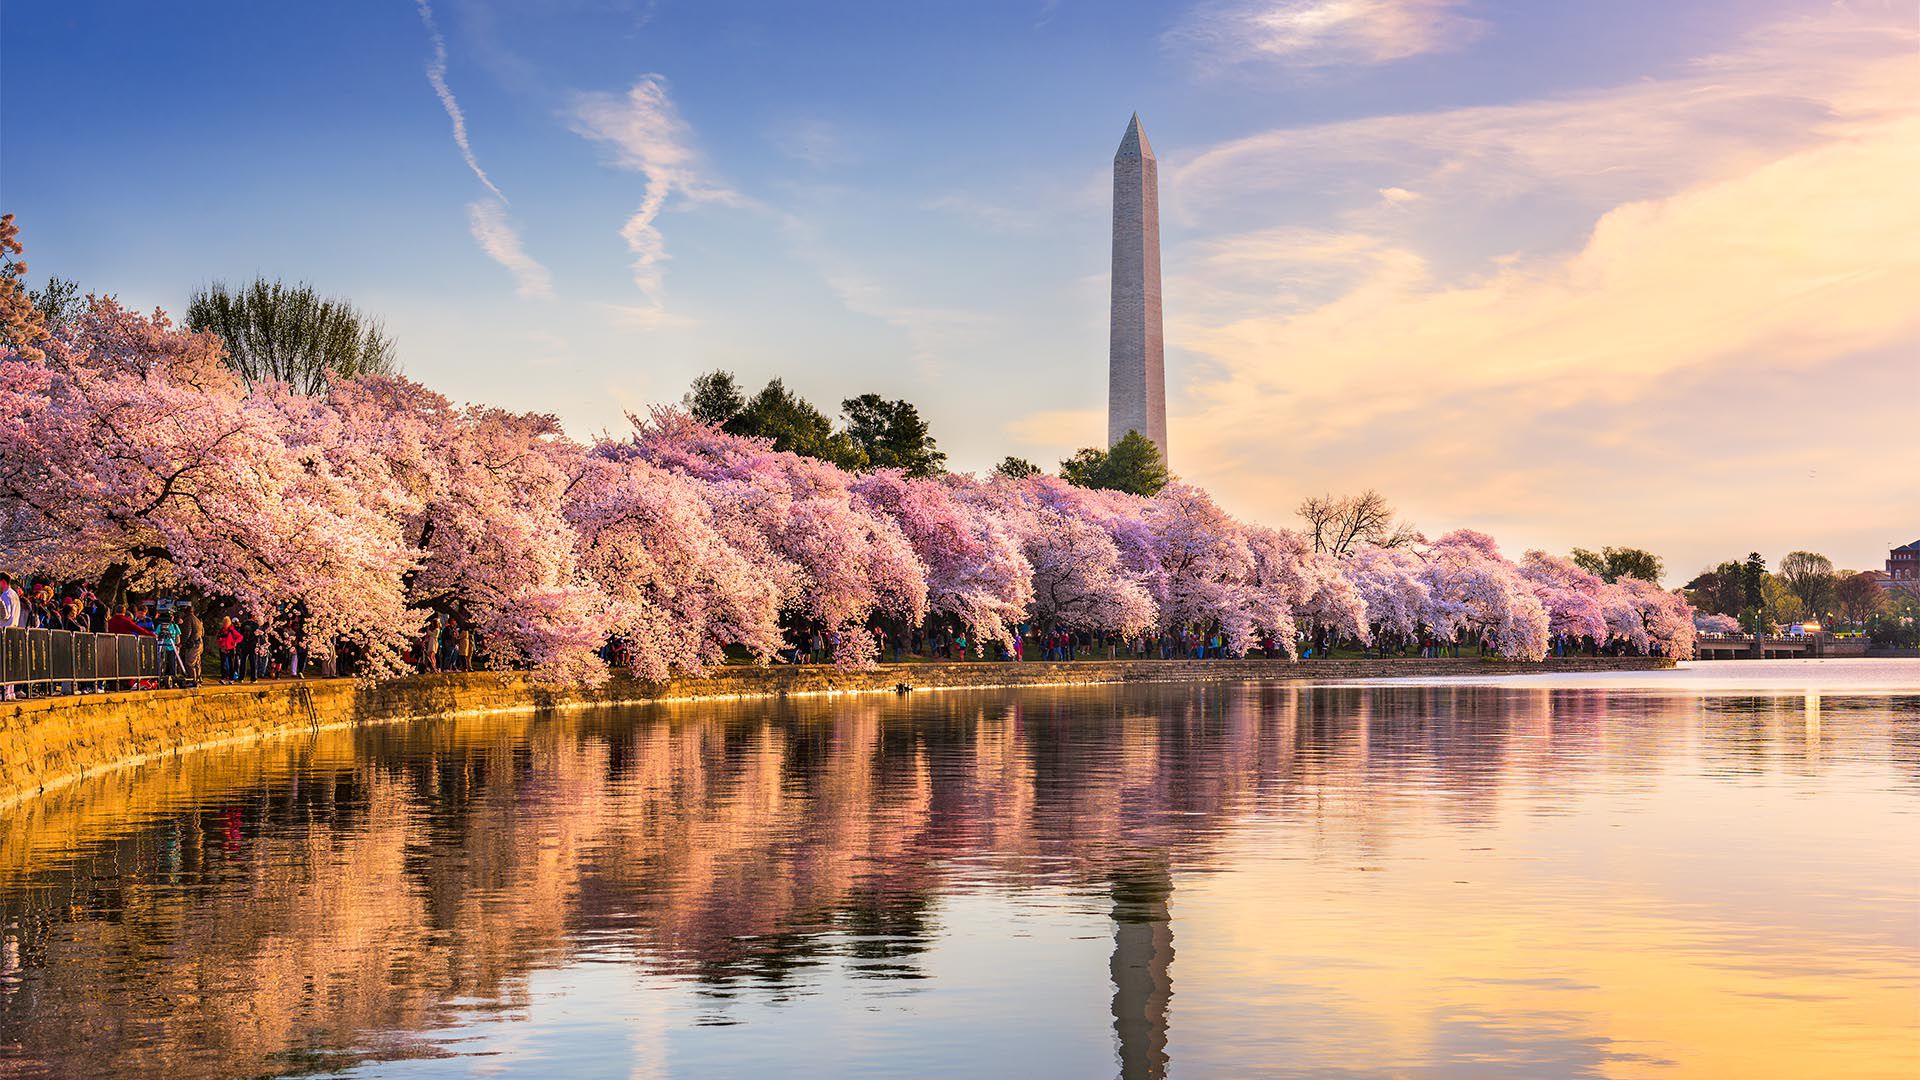 La capital de los Estados Unidos está repleta de monumentos emblemáticos, vastos museos y los pasillos del poder donde deambulan los políticos. Washington DC es una ciudad segura en general